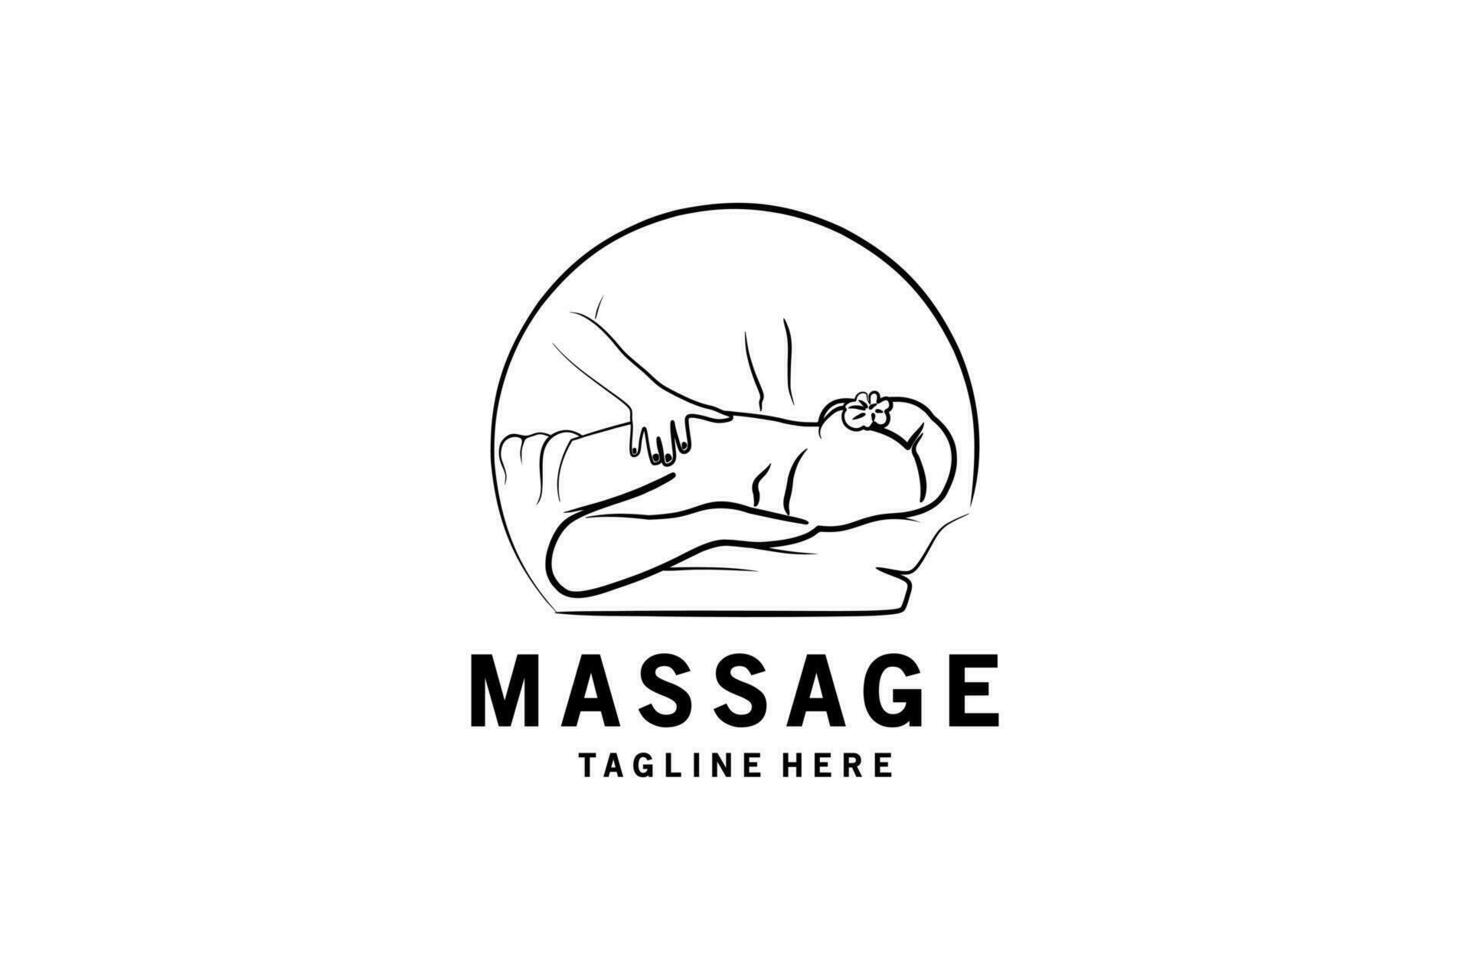 básico mujer rgb salud y belleza masaje logo diseño con creativo mano dibujado concepto vector